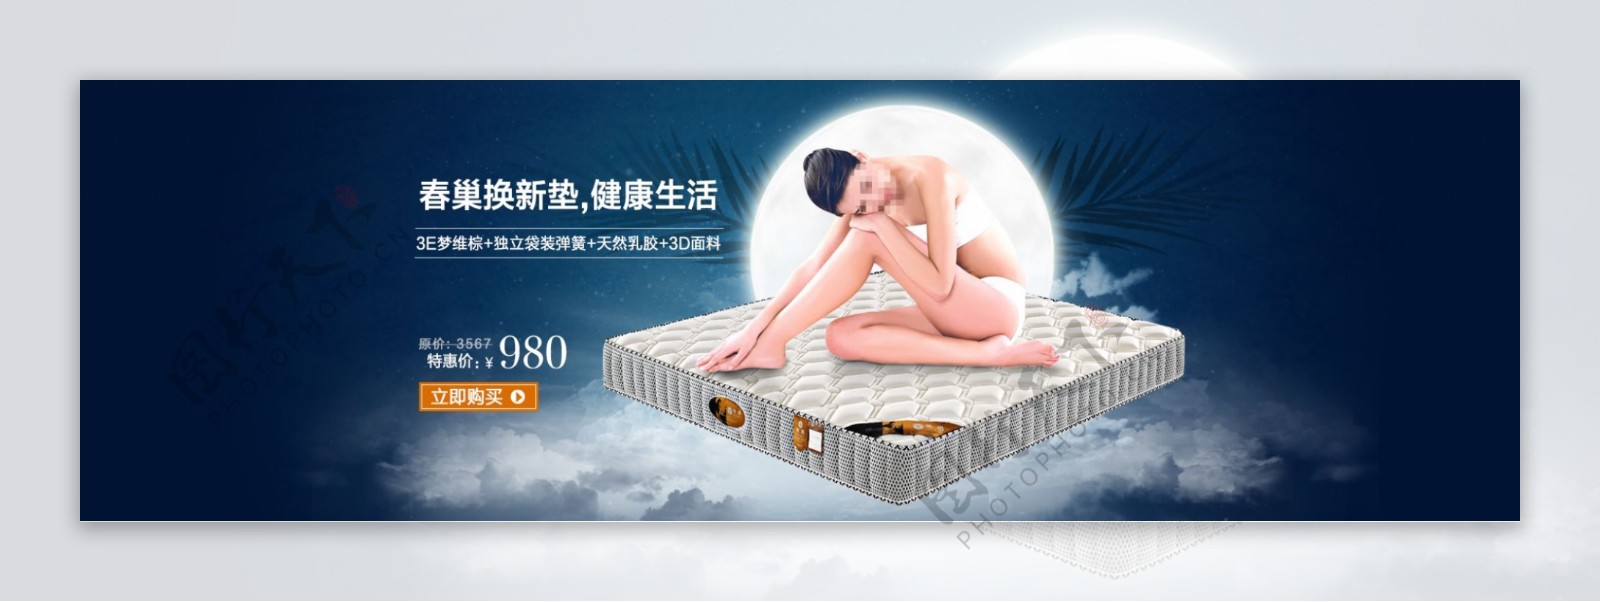 淘宝床垫促销海报设计PSD素材